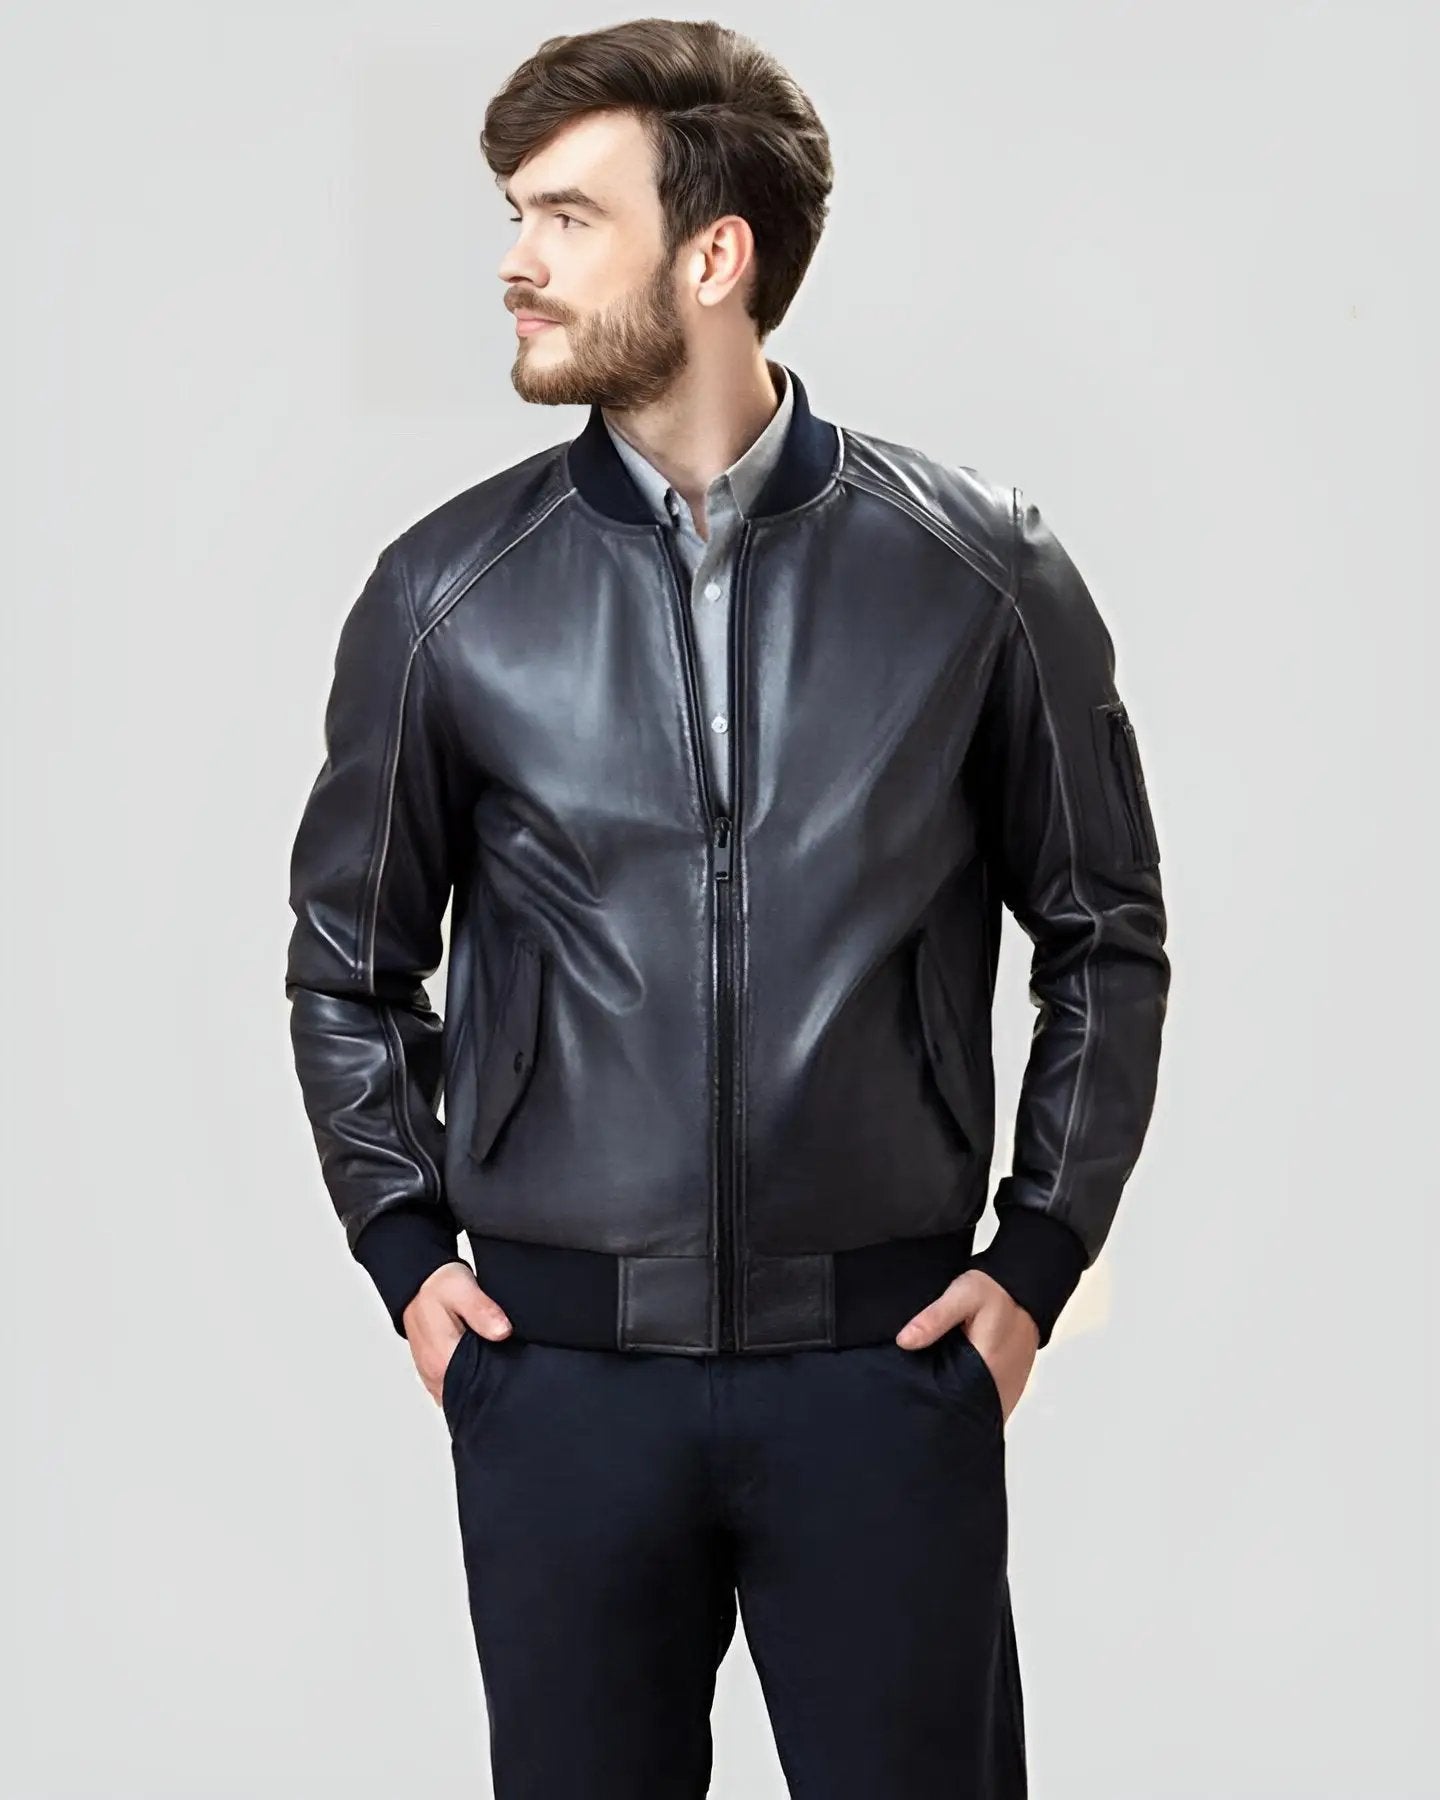 Leather-Jacket-for-Men-Biker-Casual-Jacket